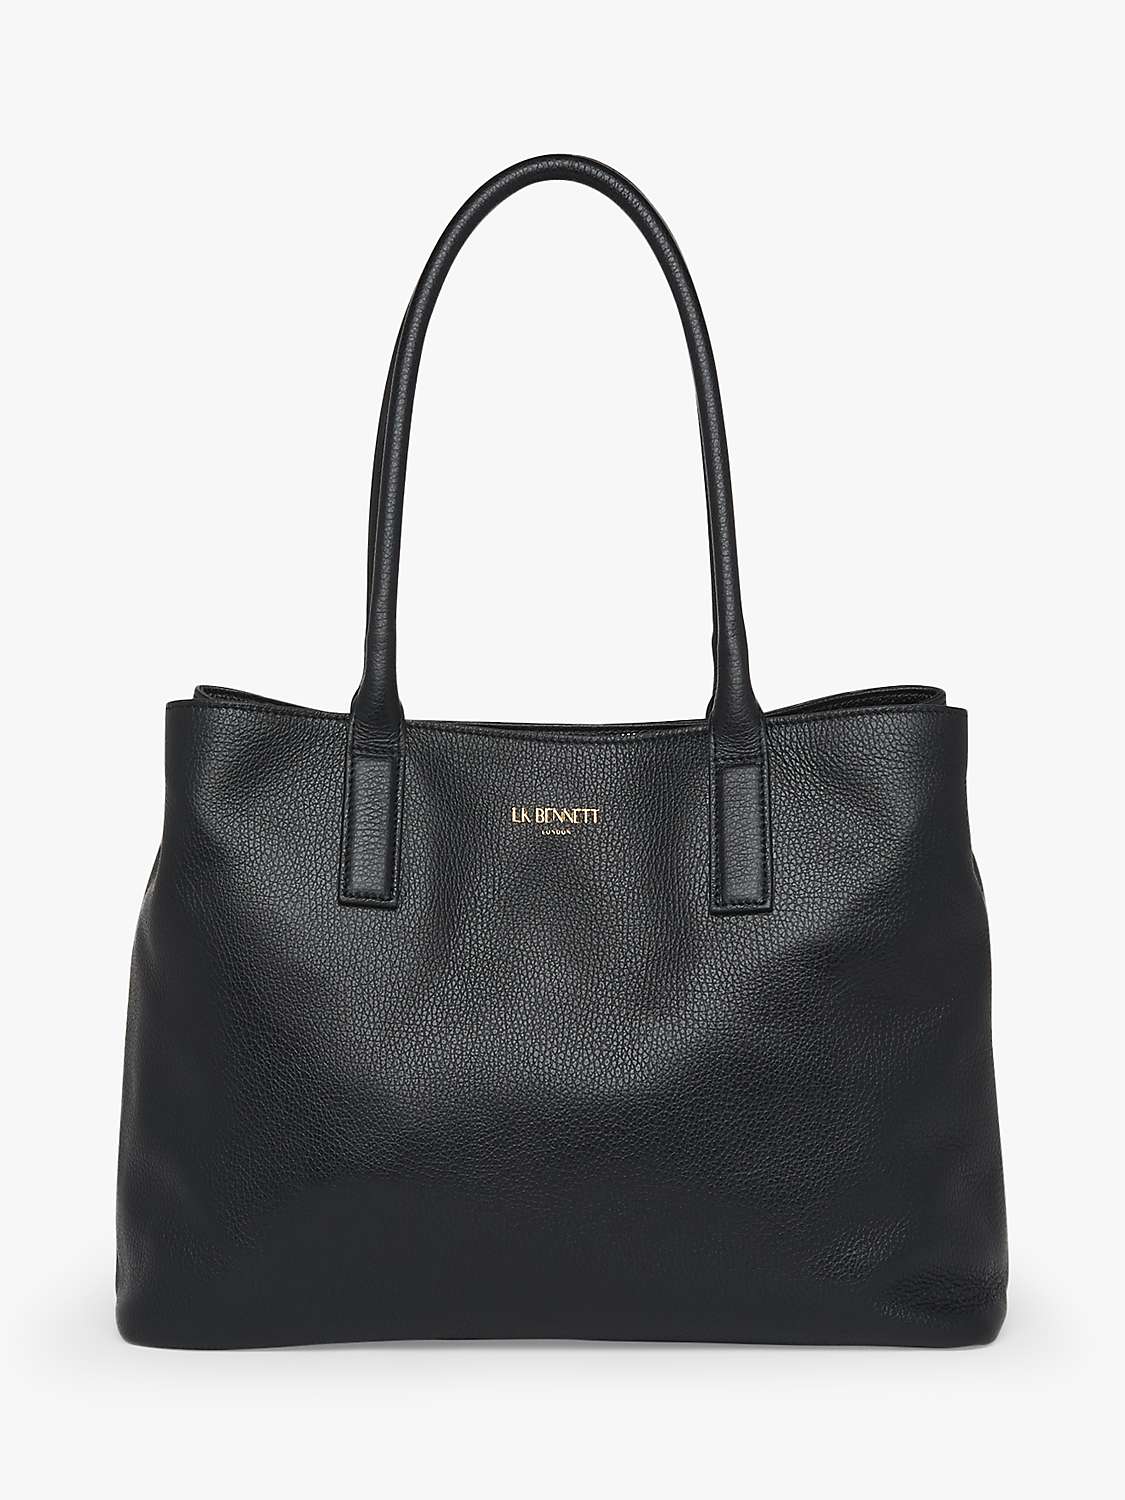 Buy L.K.Bennett Lilian Leather Tote Bag Online at johnlewis.com